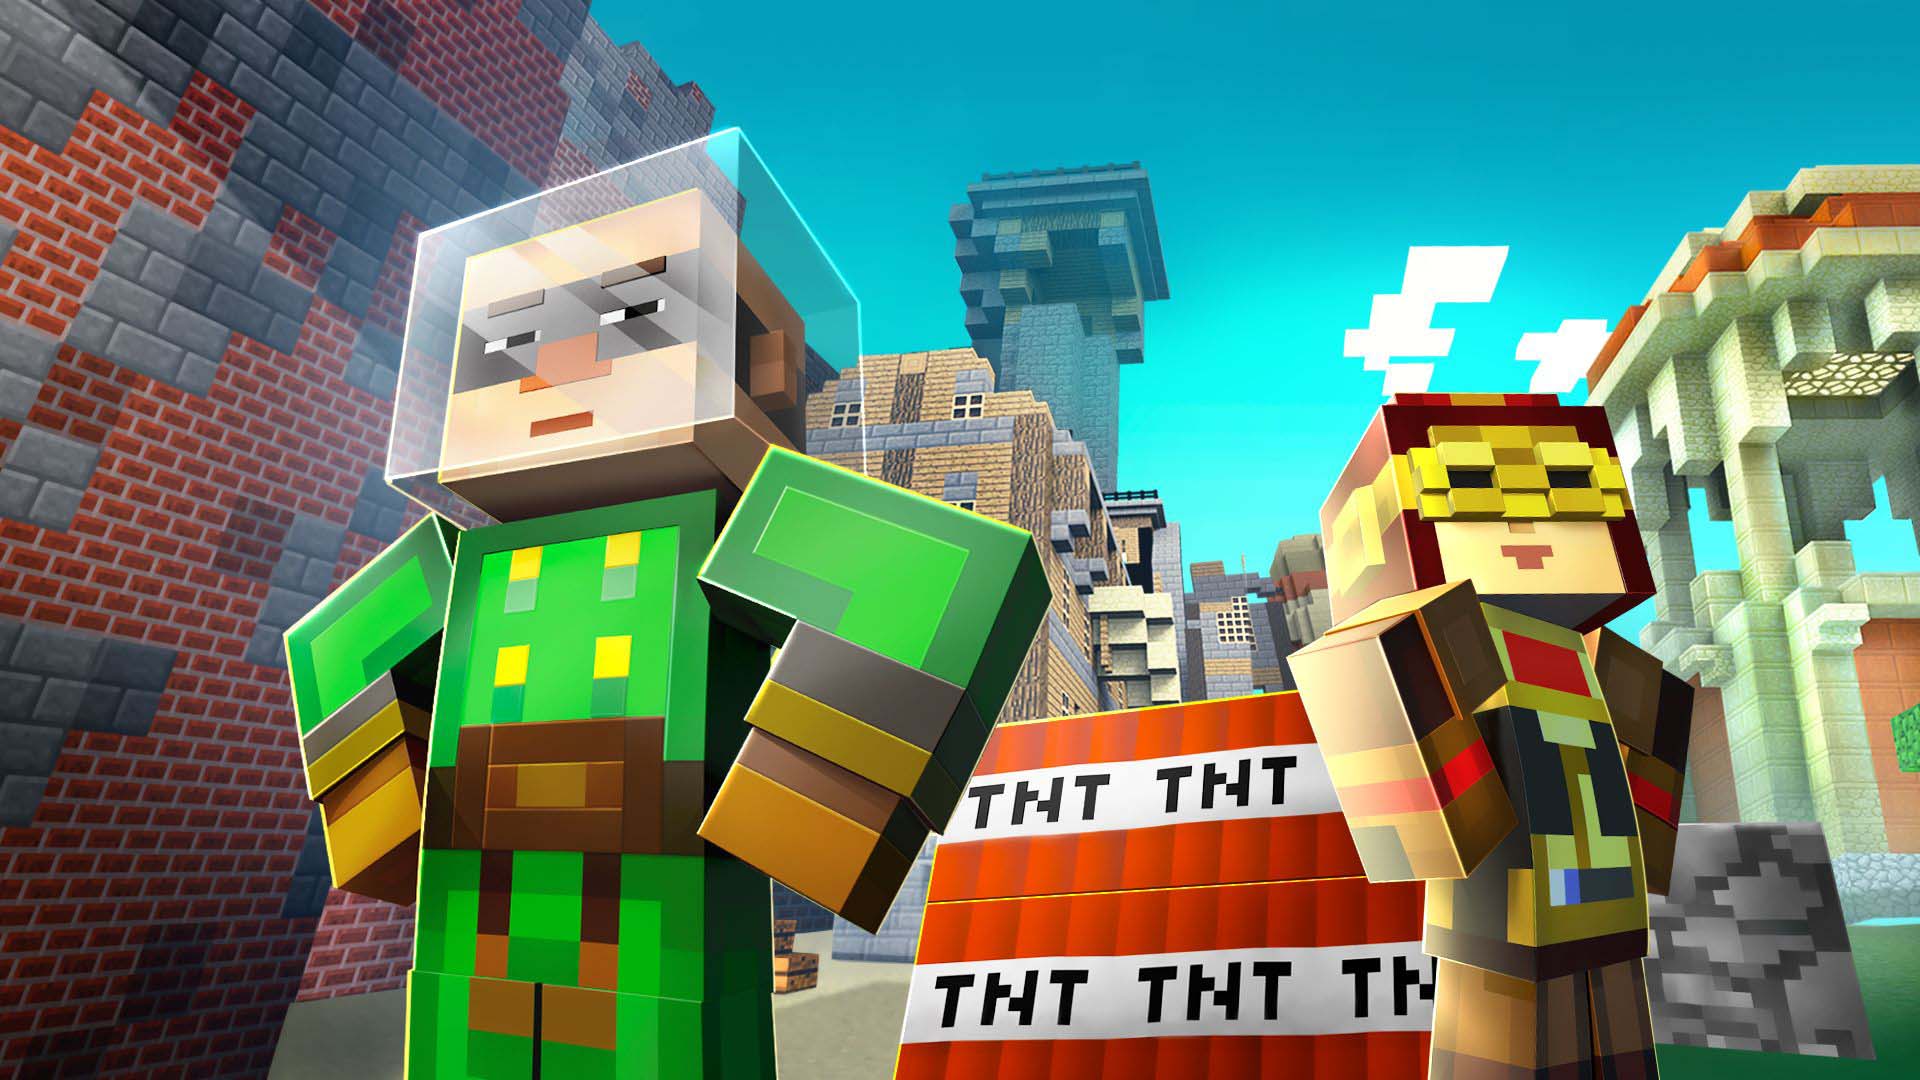 Bán được hơn 200 triệu bản, Minecraft vẫn là game hot nhất hành tinh